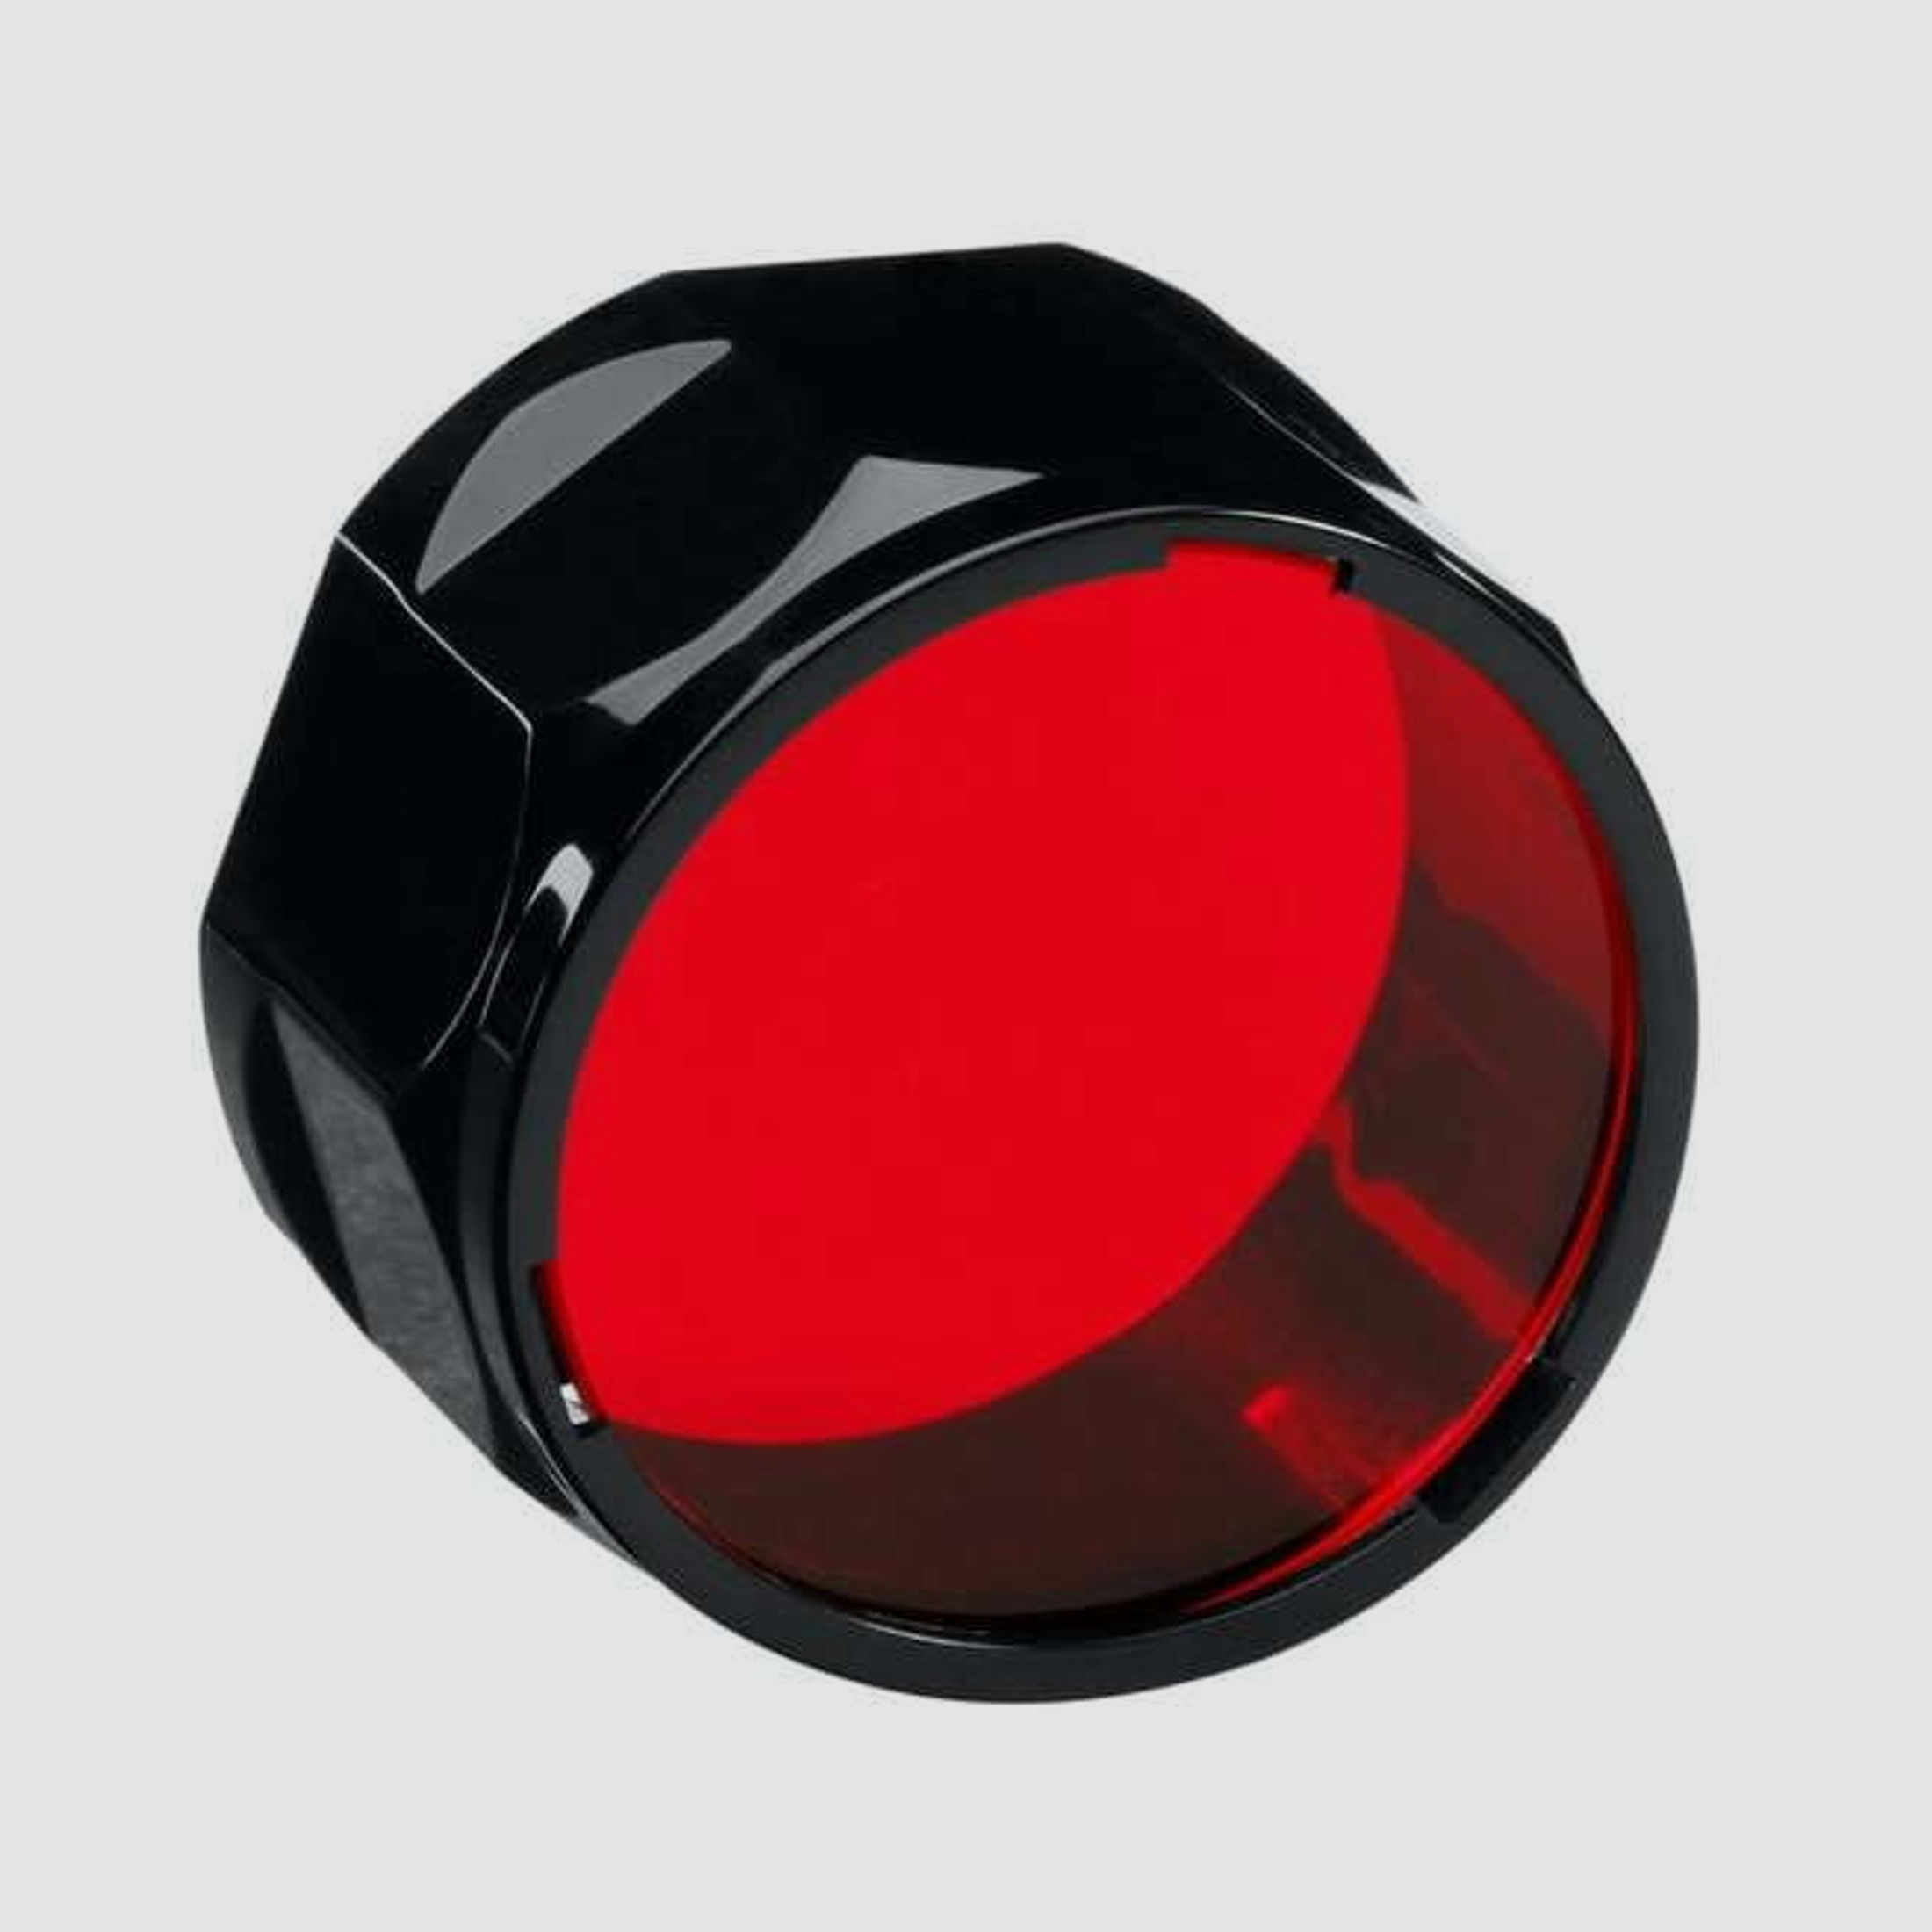 Fenix Farbfilter rot für E40, E50, LD41, TK22, RC15